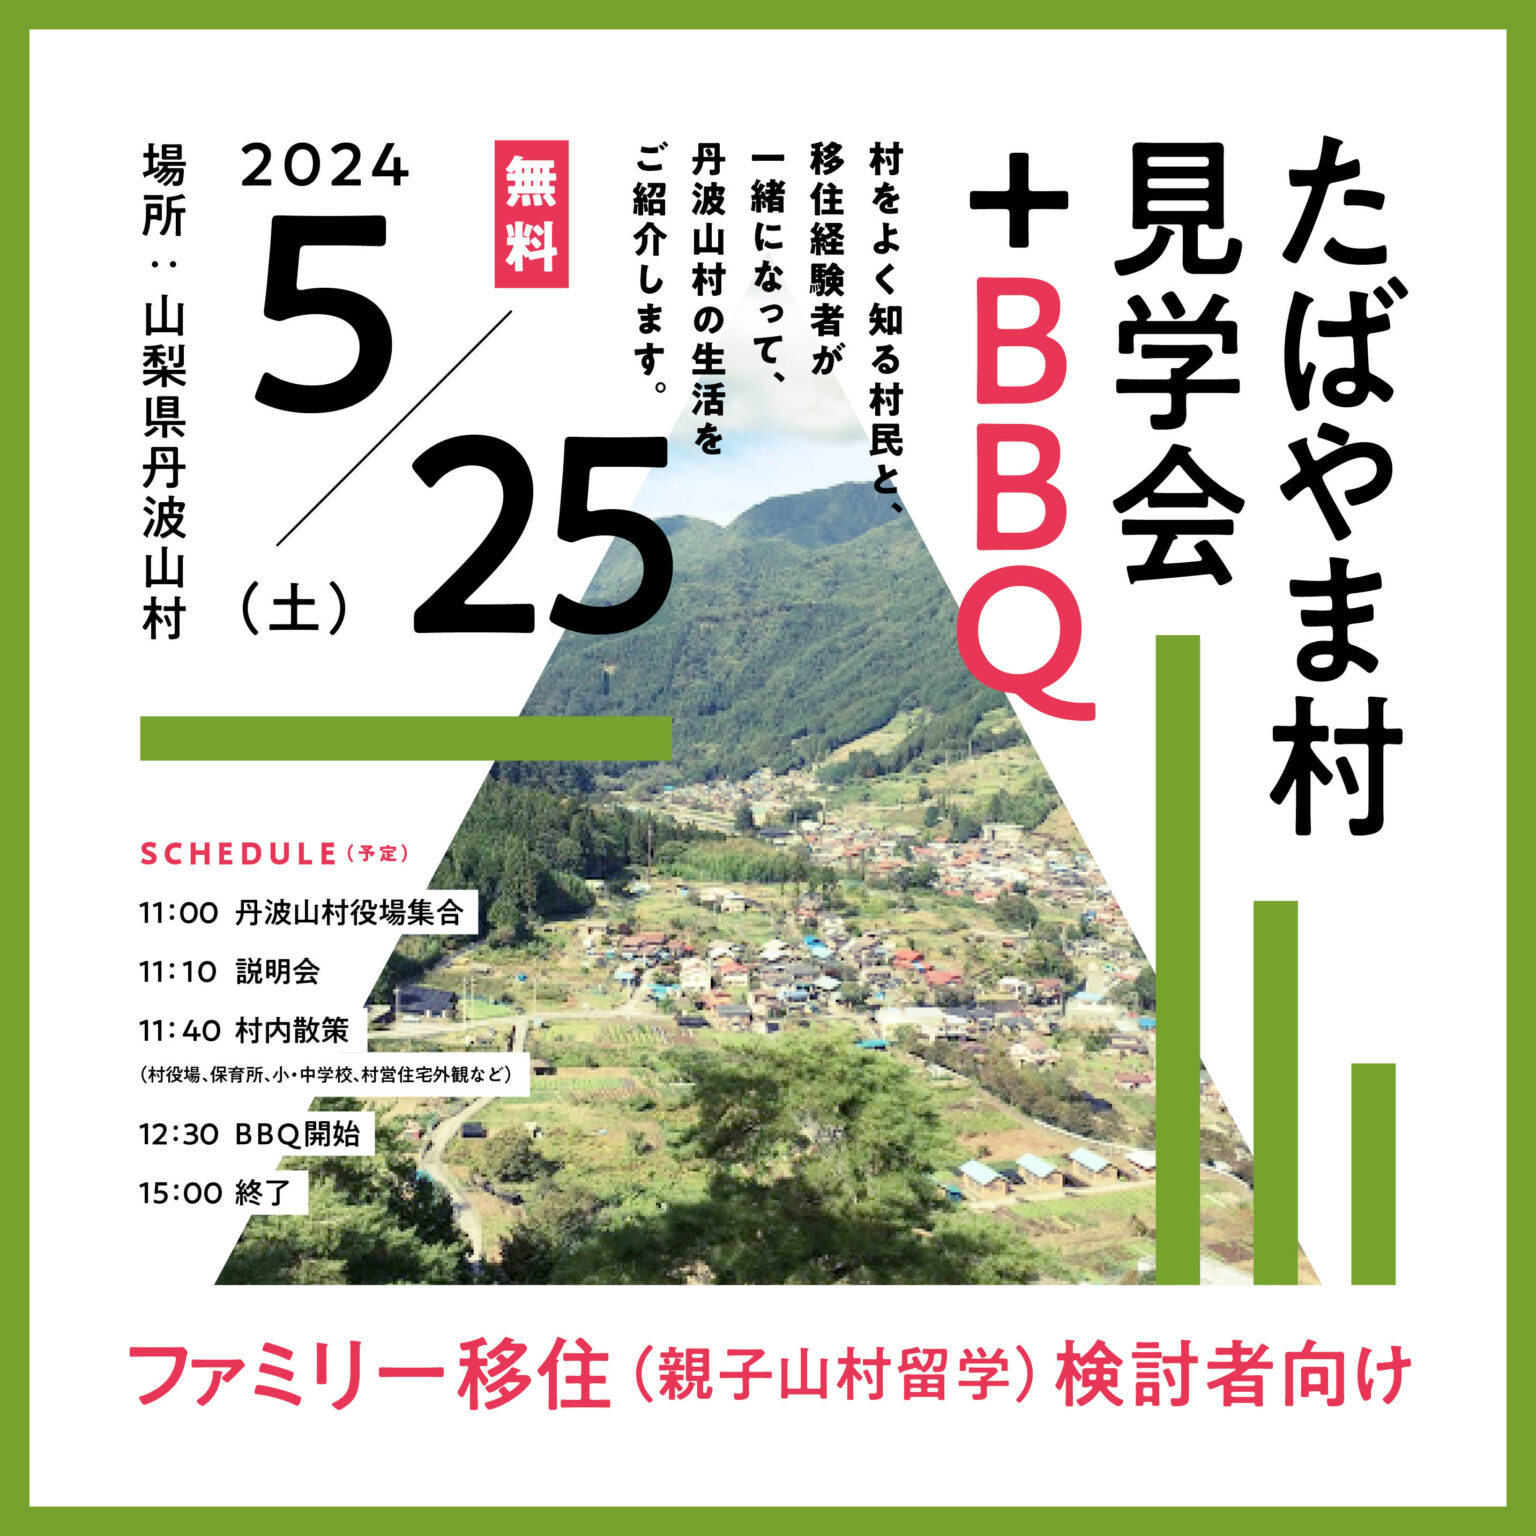 たばやま村見学会+BBQ開催！(親子山村留学検討者向け) | 移住関連イベント情報